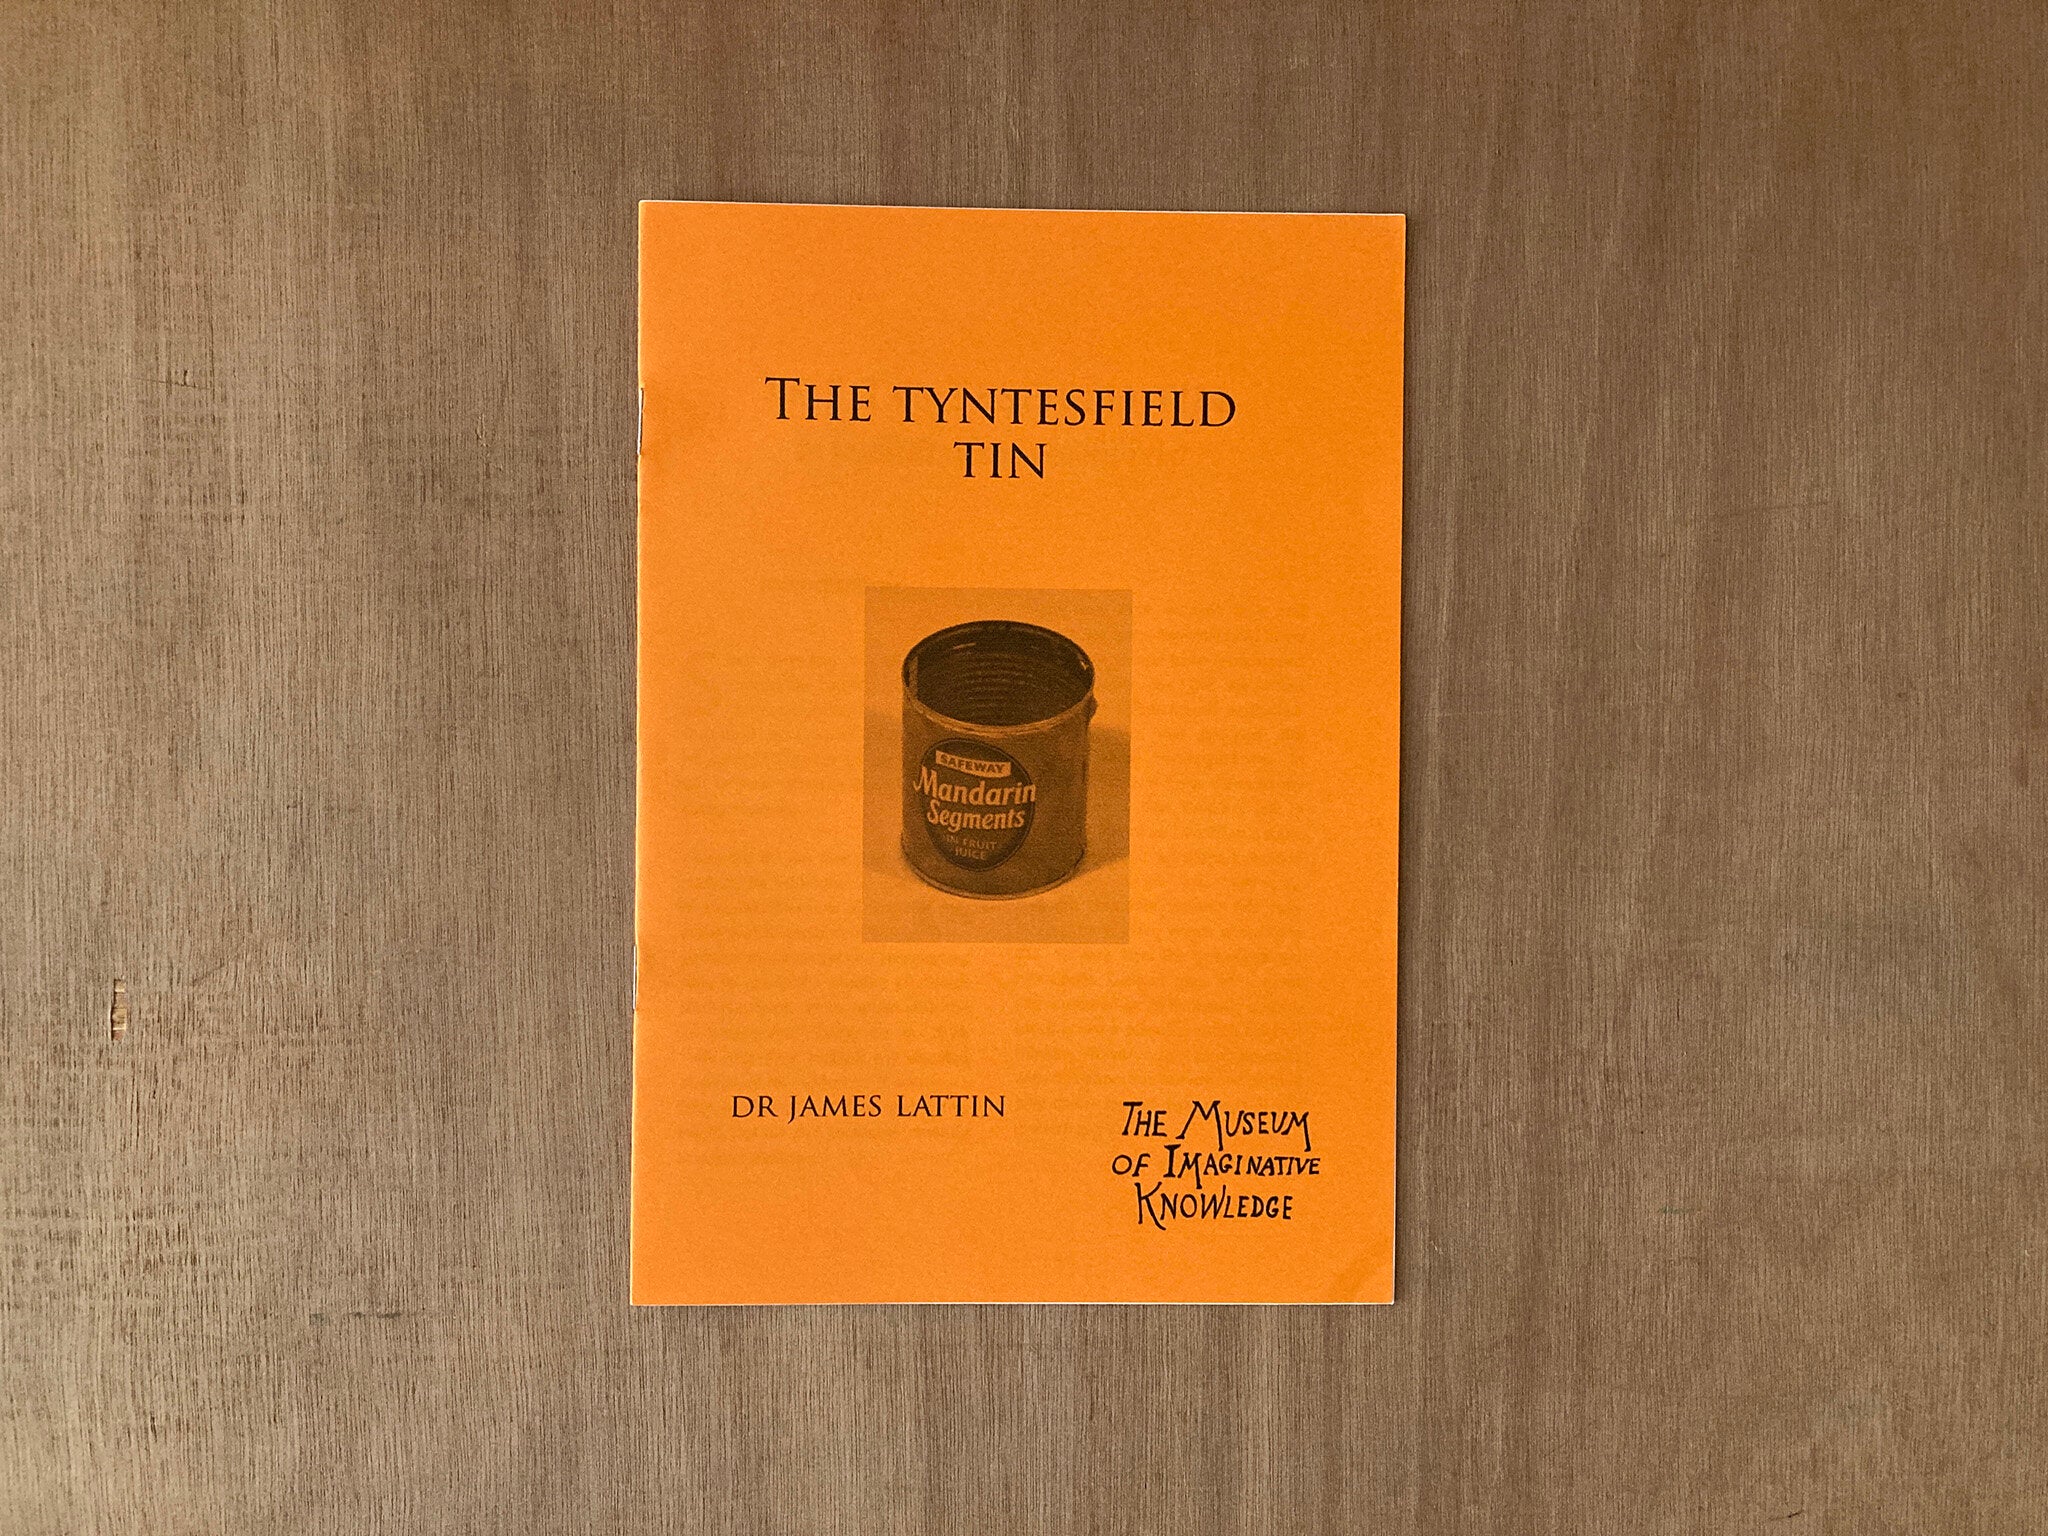 THE TYNTESFIELD TIN by Dr James Lattin